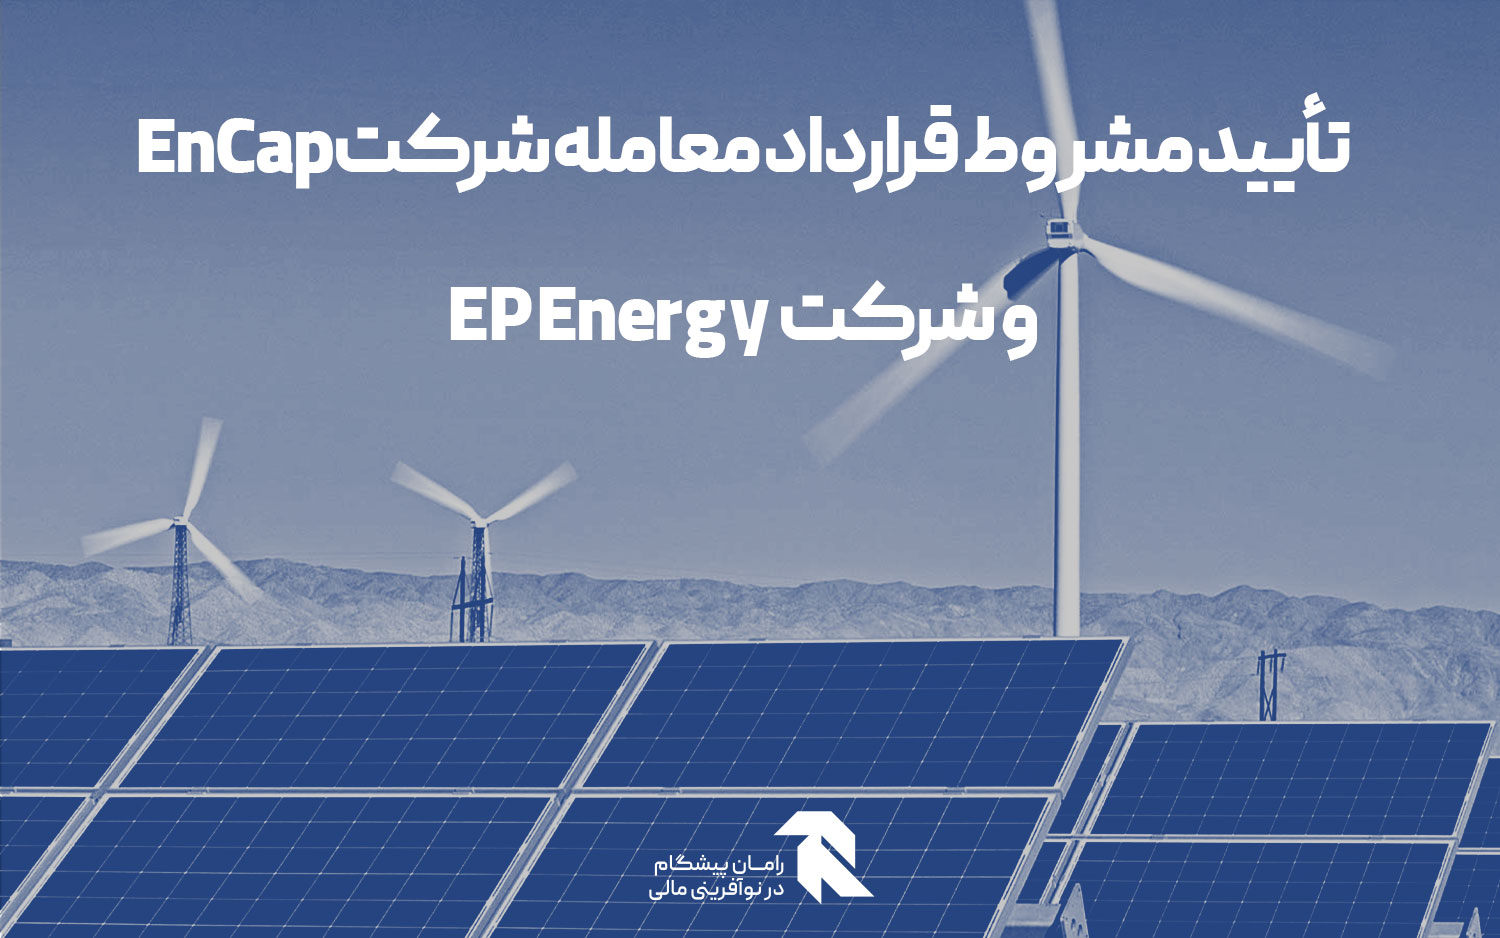 تأیید مشروط قرارداد معامله شرکت EnCap و شرکت EP Energy